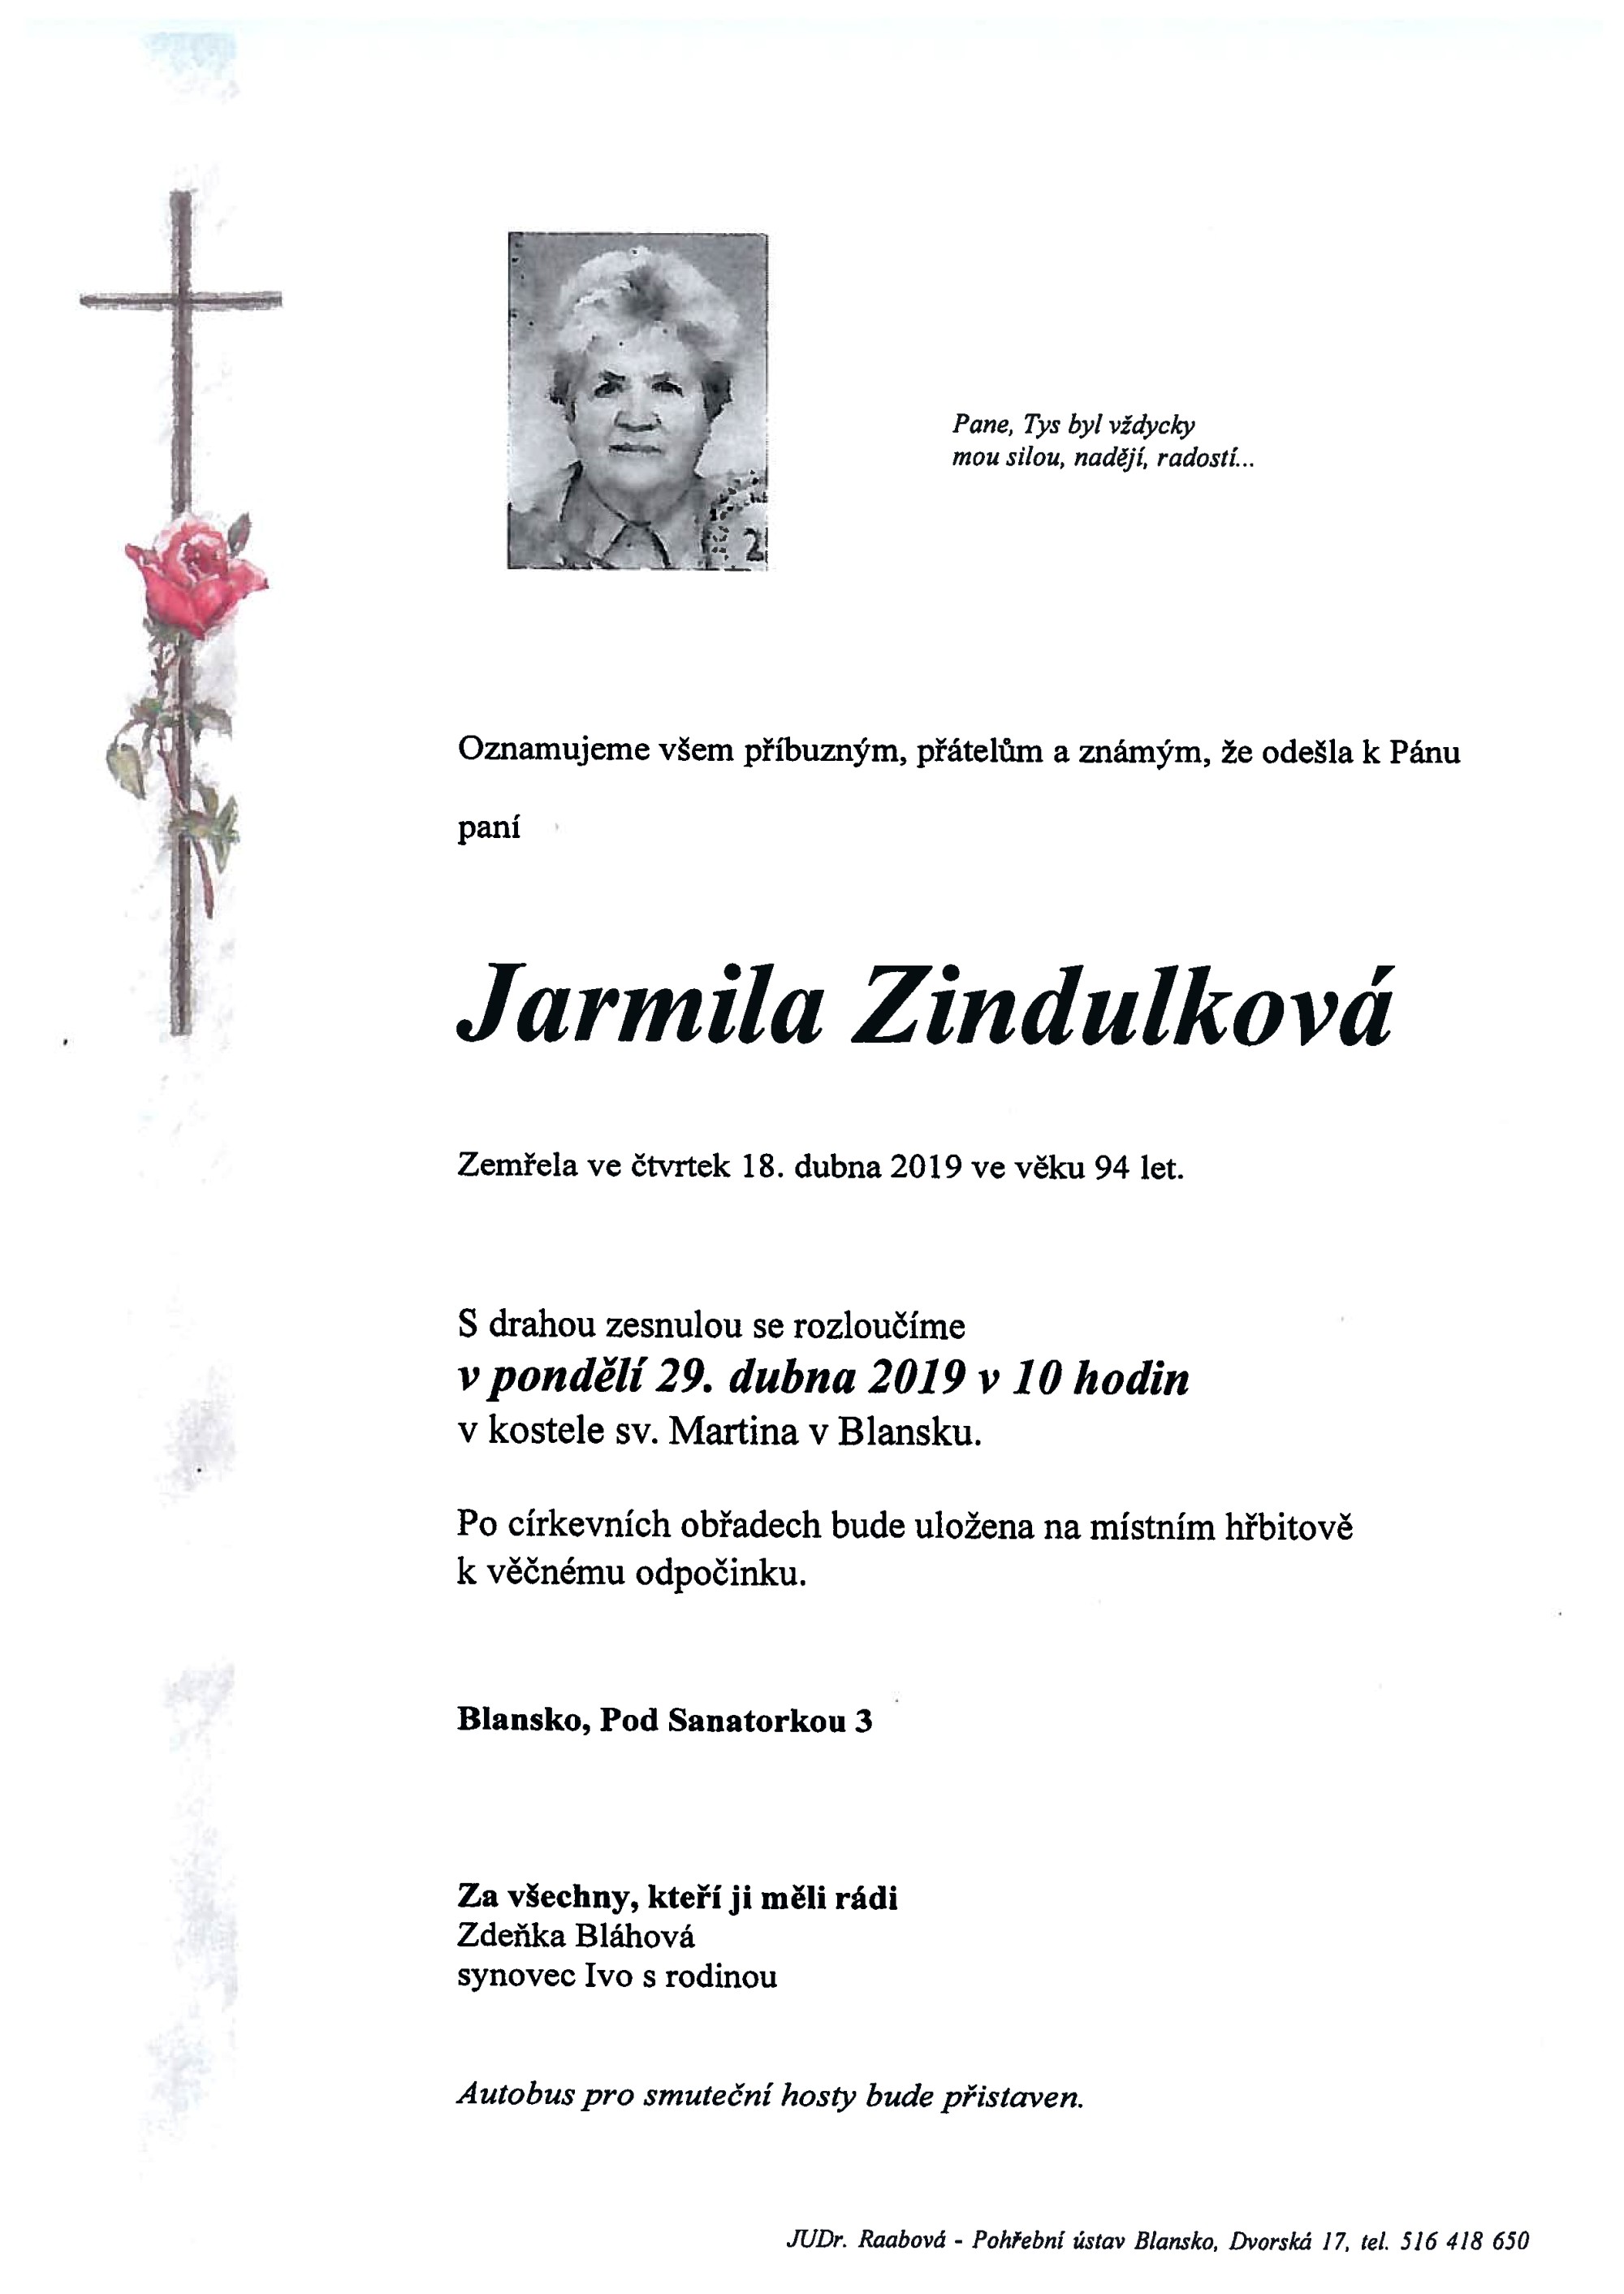 Jarmila Zindulková